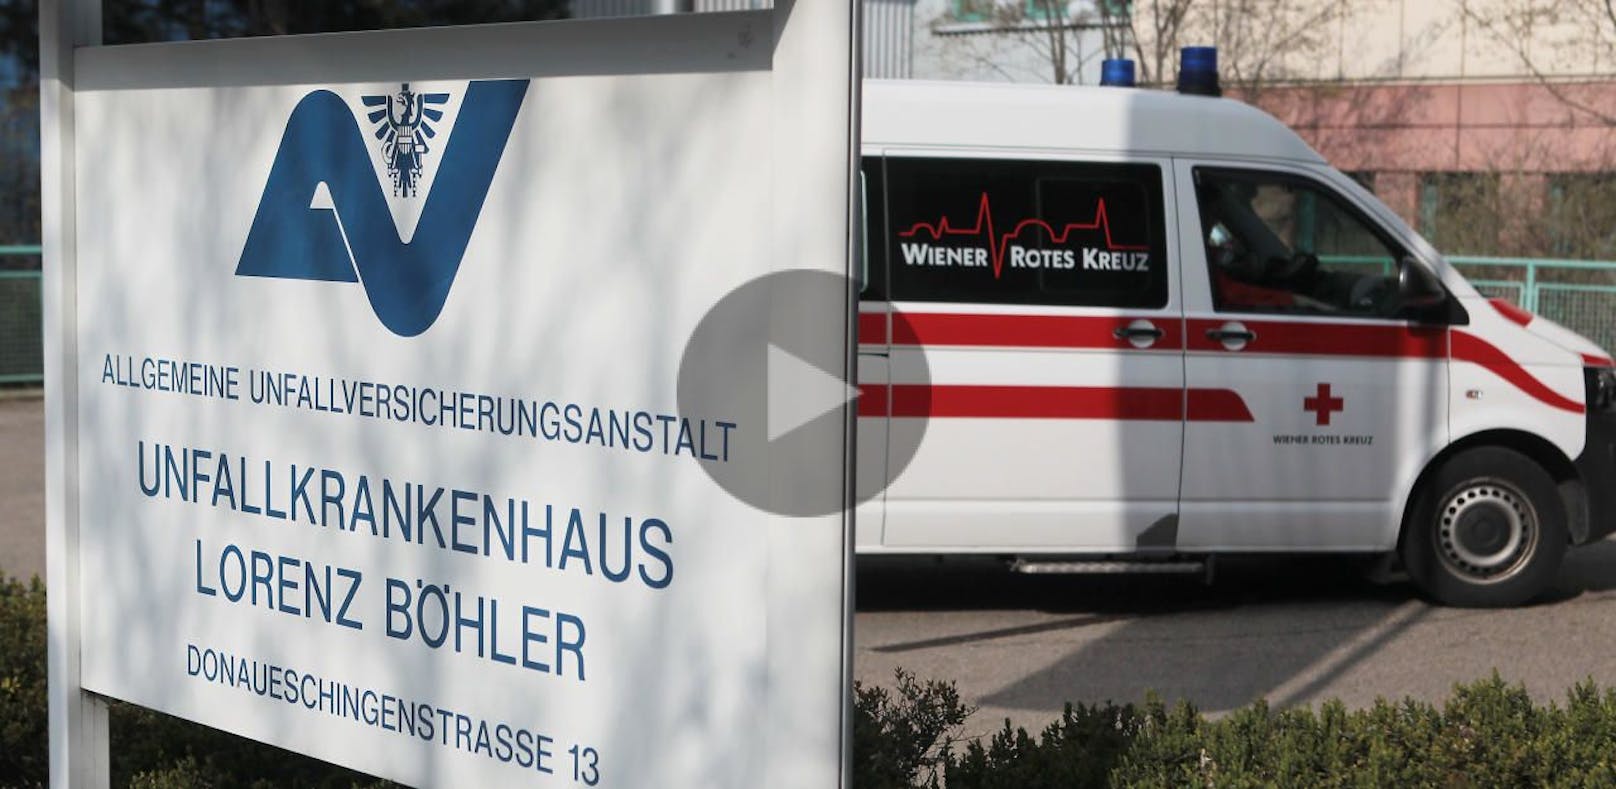 Wien bangt nun um Unfall-Krankenhäuser